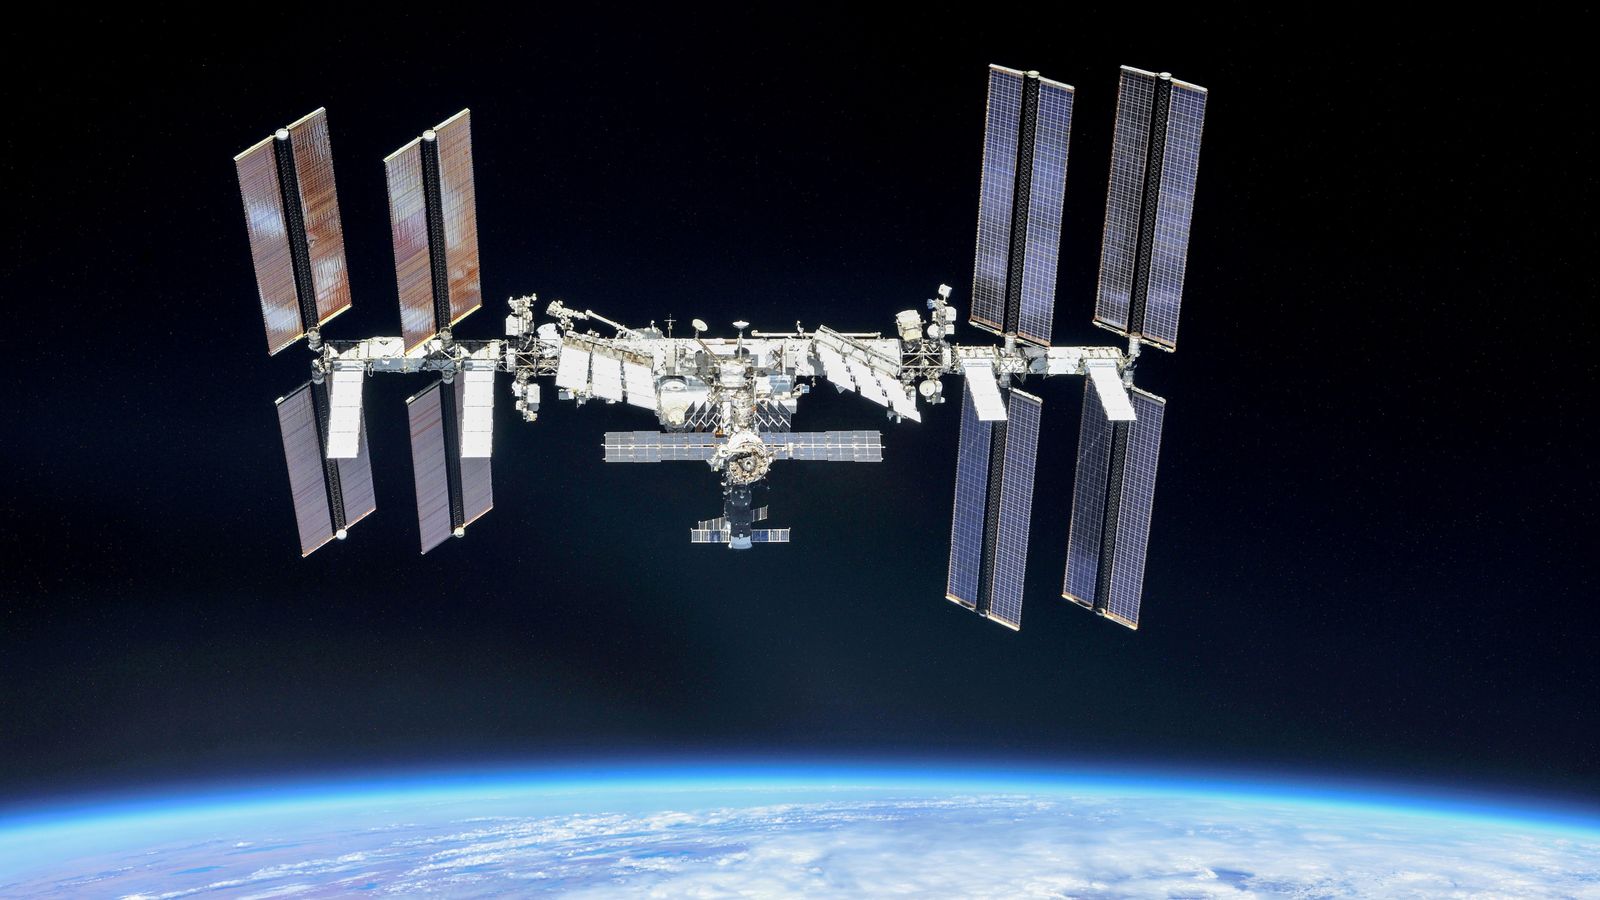 Stasiun Luar Angkasa Internasional terpaksa menghindari puing-puing, kata badan antariksa Rusia |  Berita Sains & Teknologi